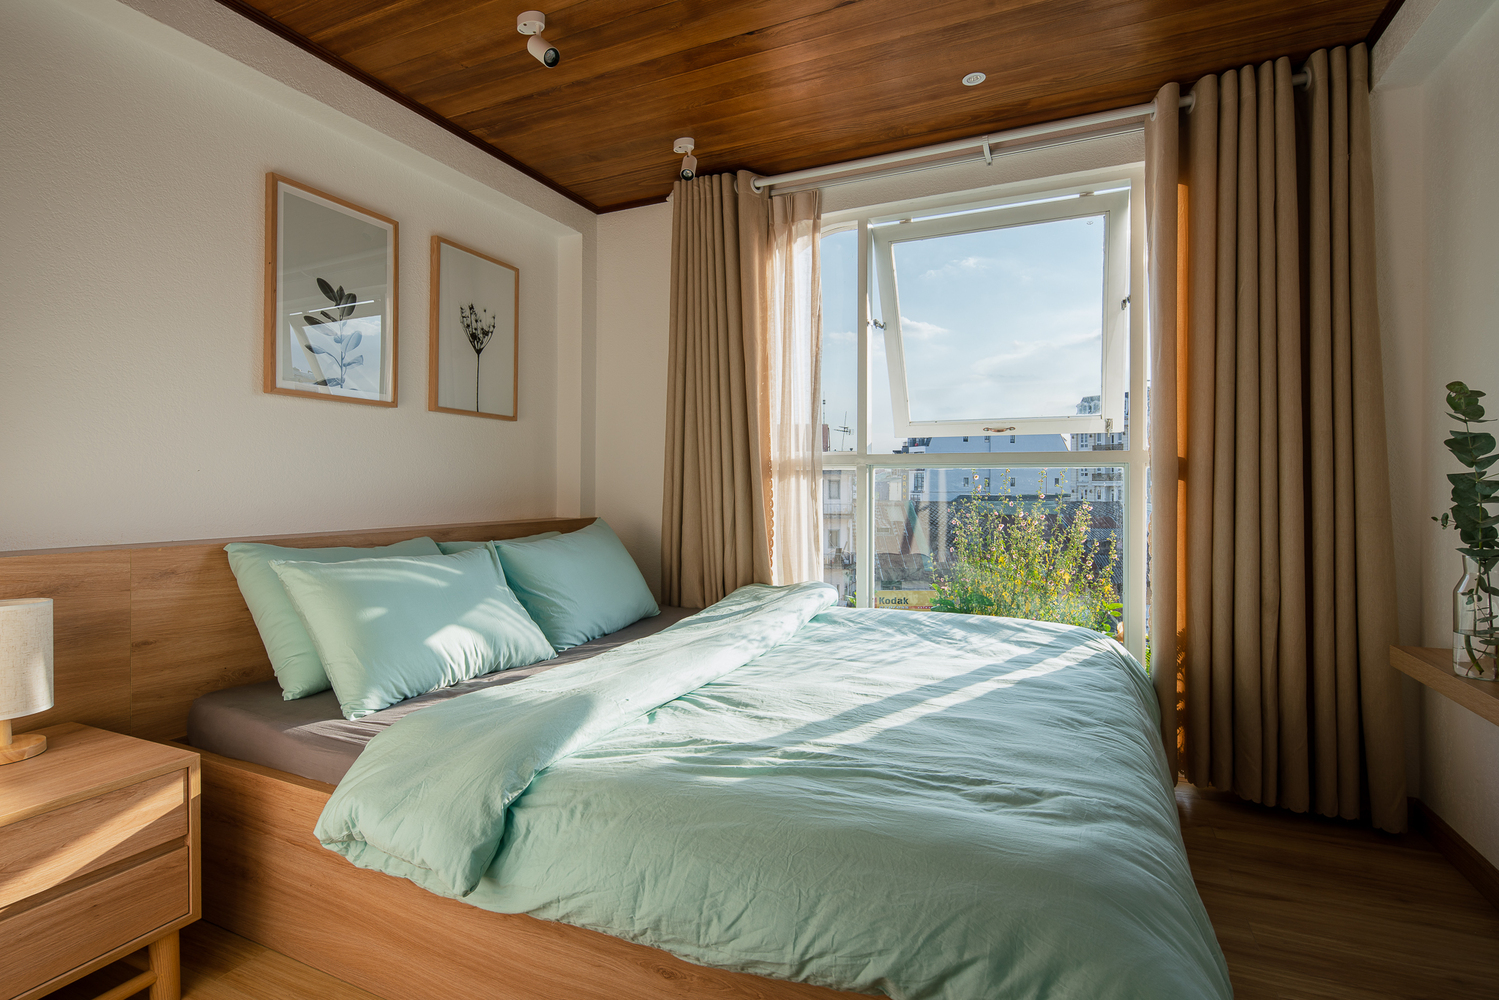 Hình ảnh phòng ngủ rộng thoáng với ga gối màu xanh ngọc lam dịu mát, cạnh đó cửa sổ kính lớn, tranh treo đầu giường